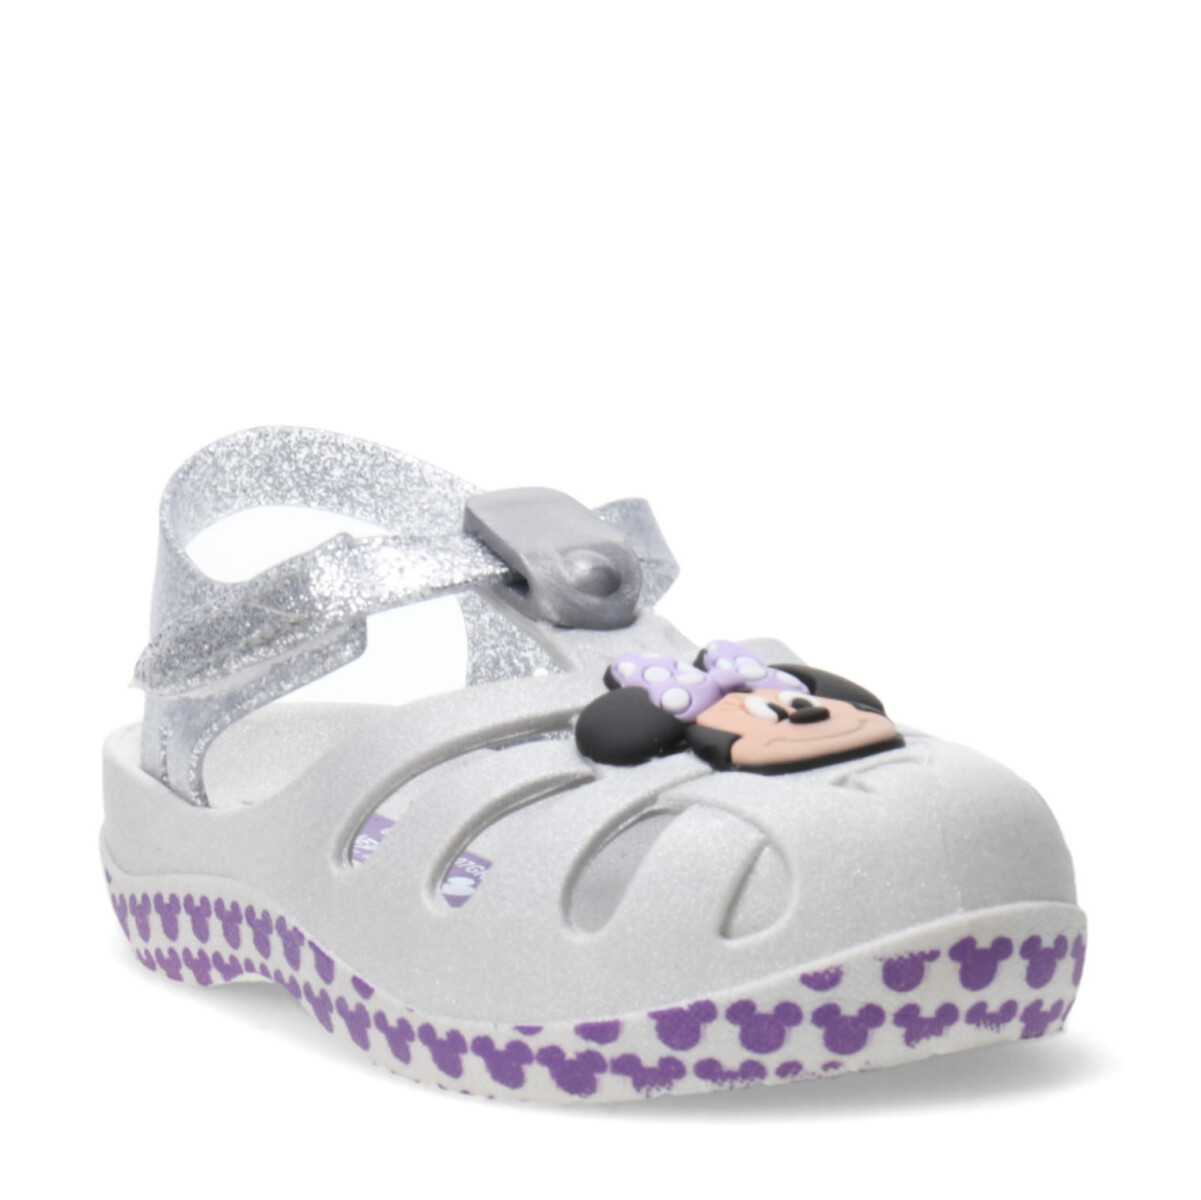 Sandalia de Niños Disney Magic Sand Minnie - Gris - Violeta 